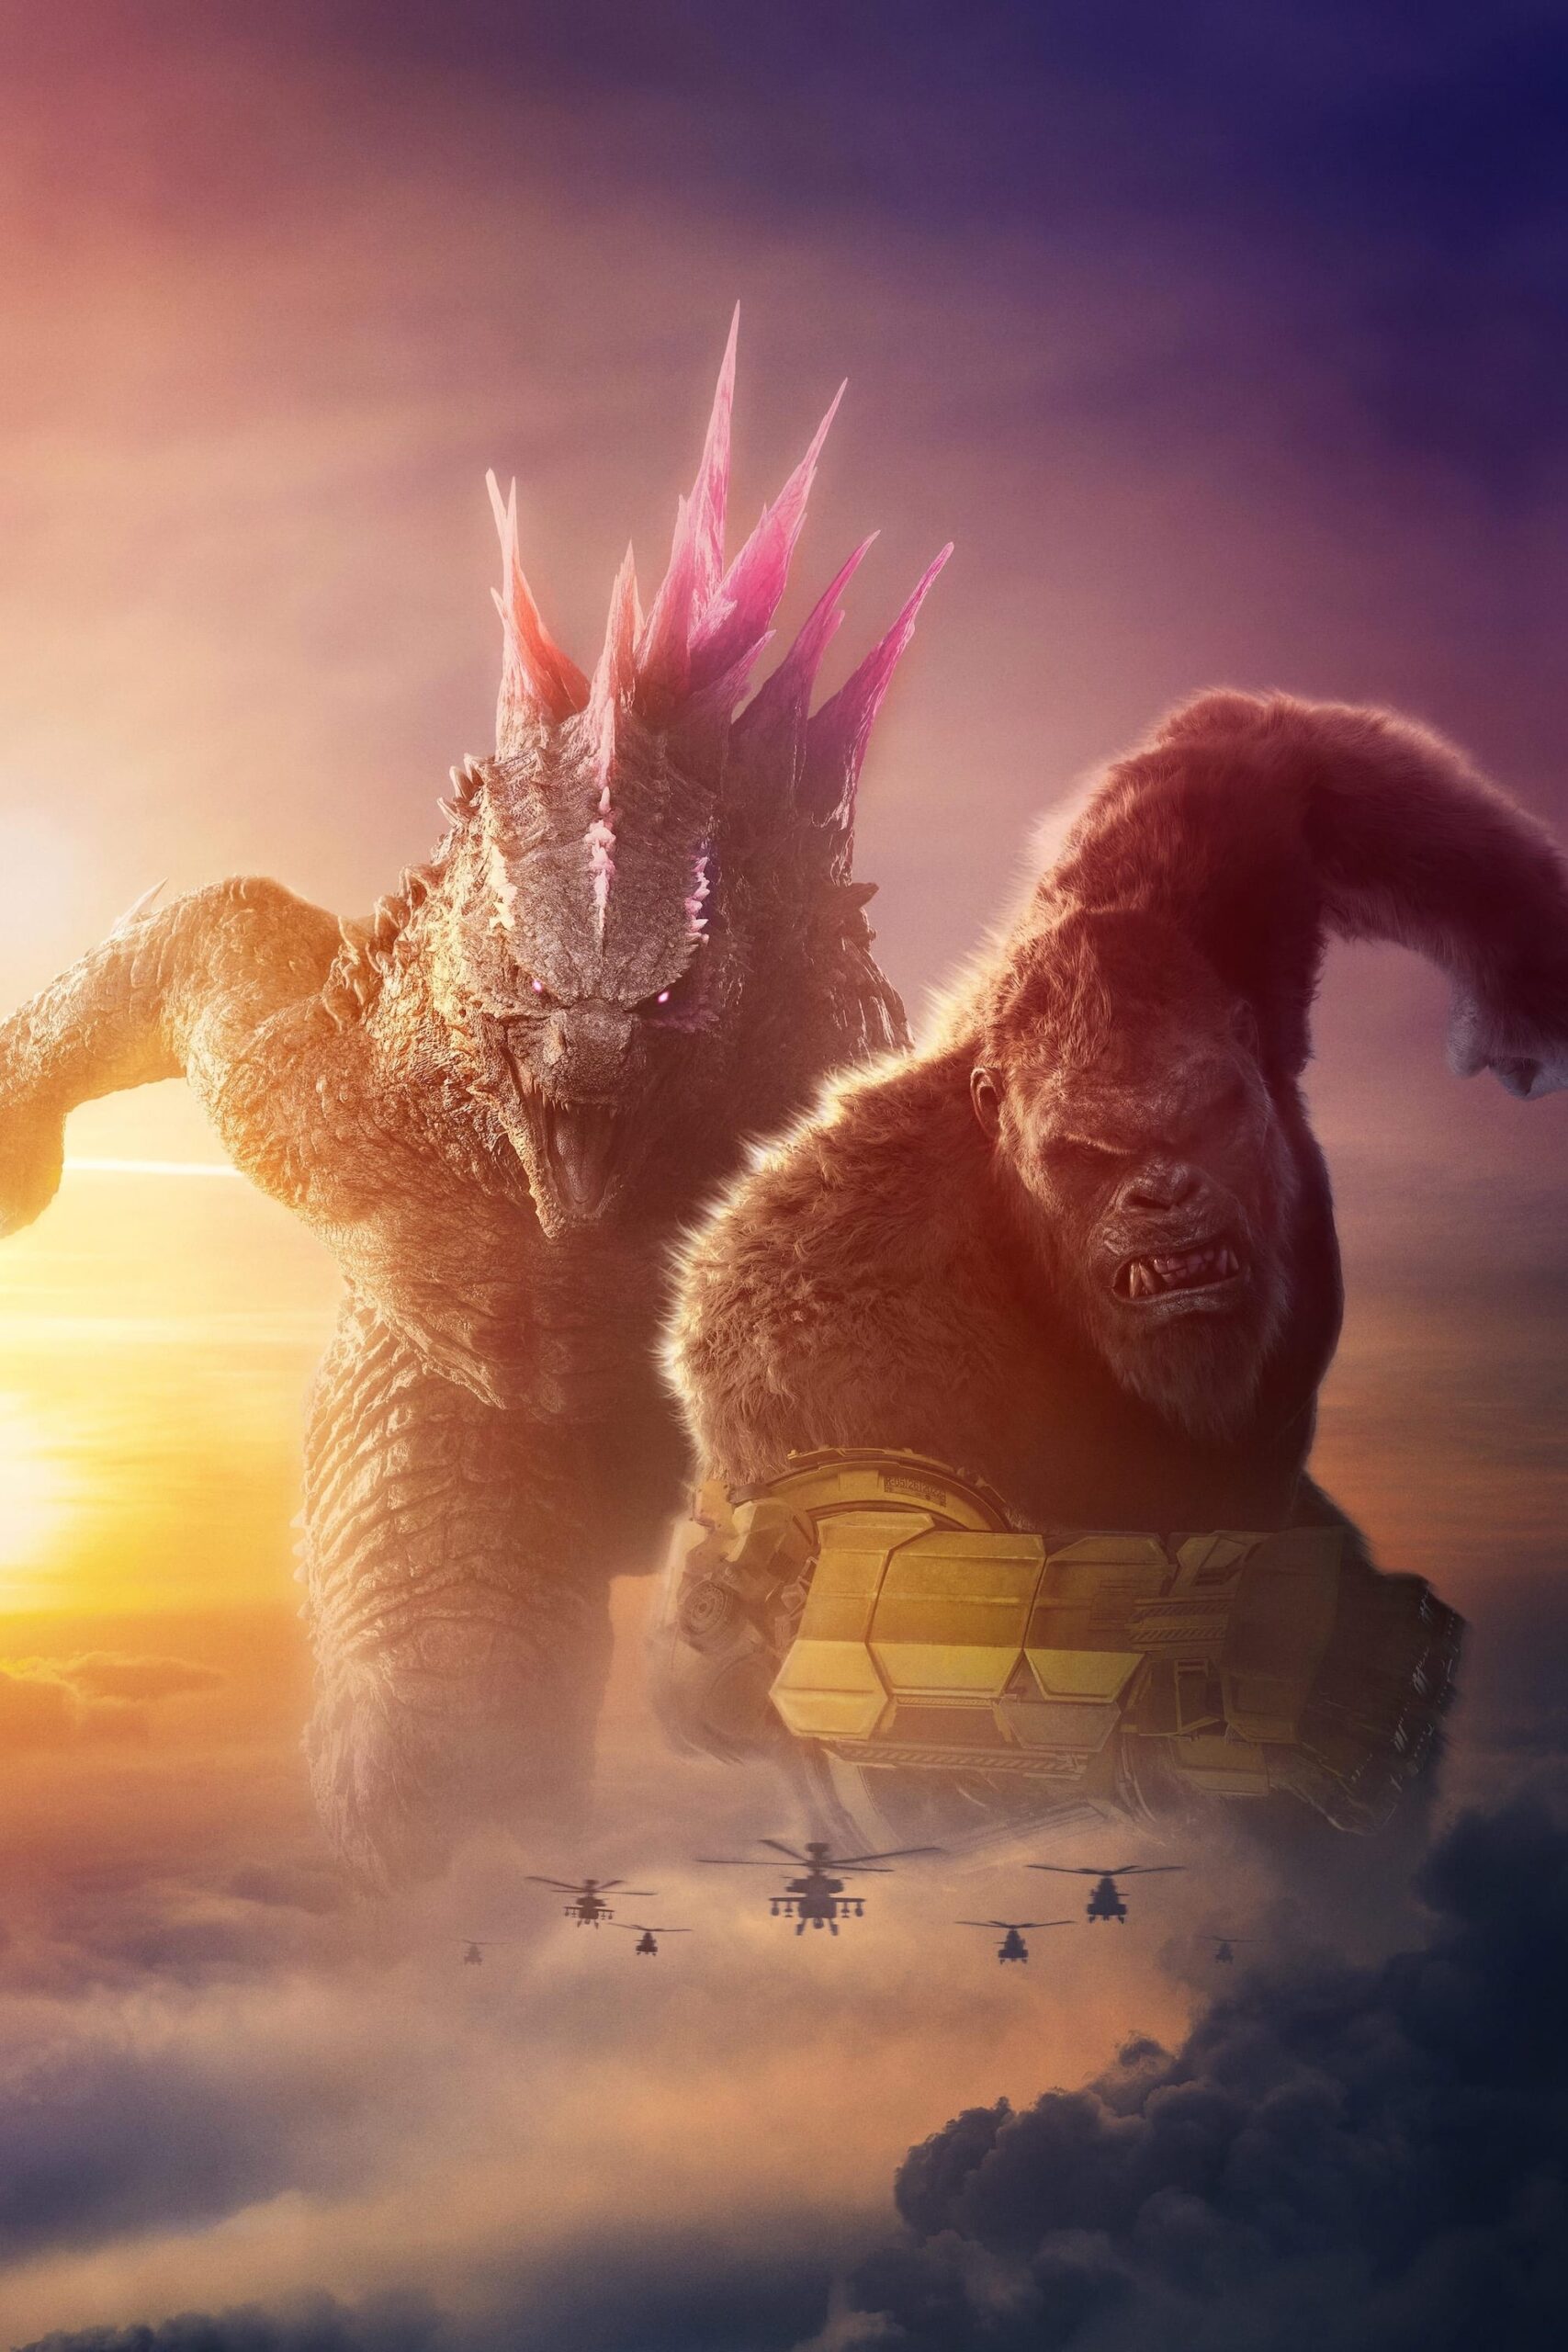 گودزیلا و کونگ: امپراتوری جدید (Godzilla x Kong: The New Empire)